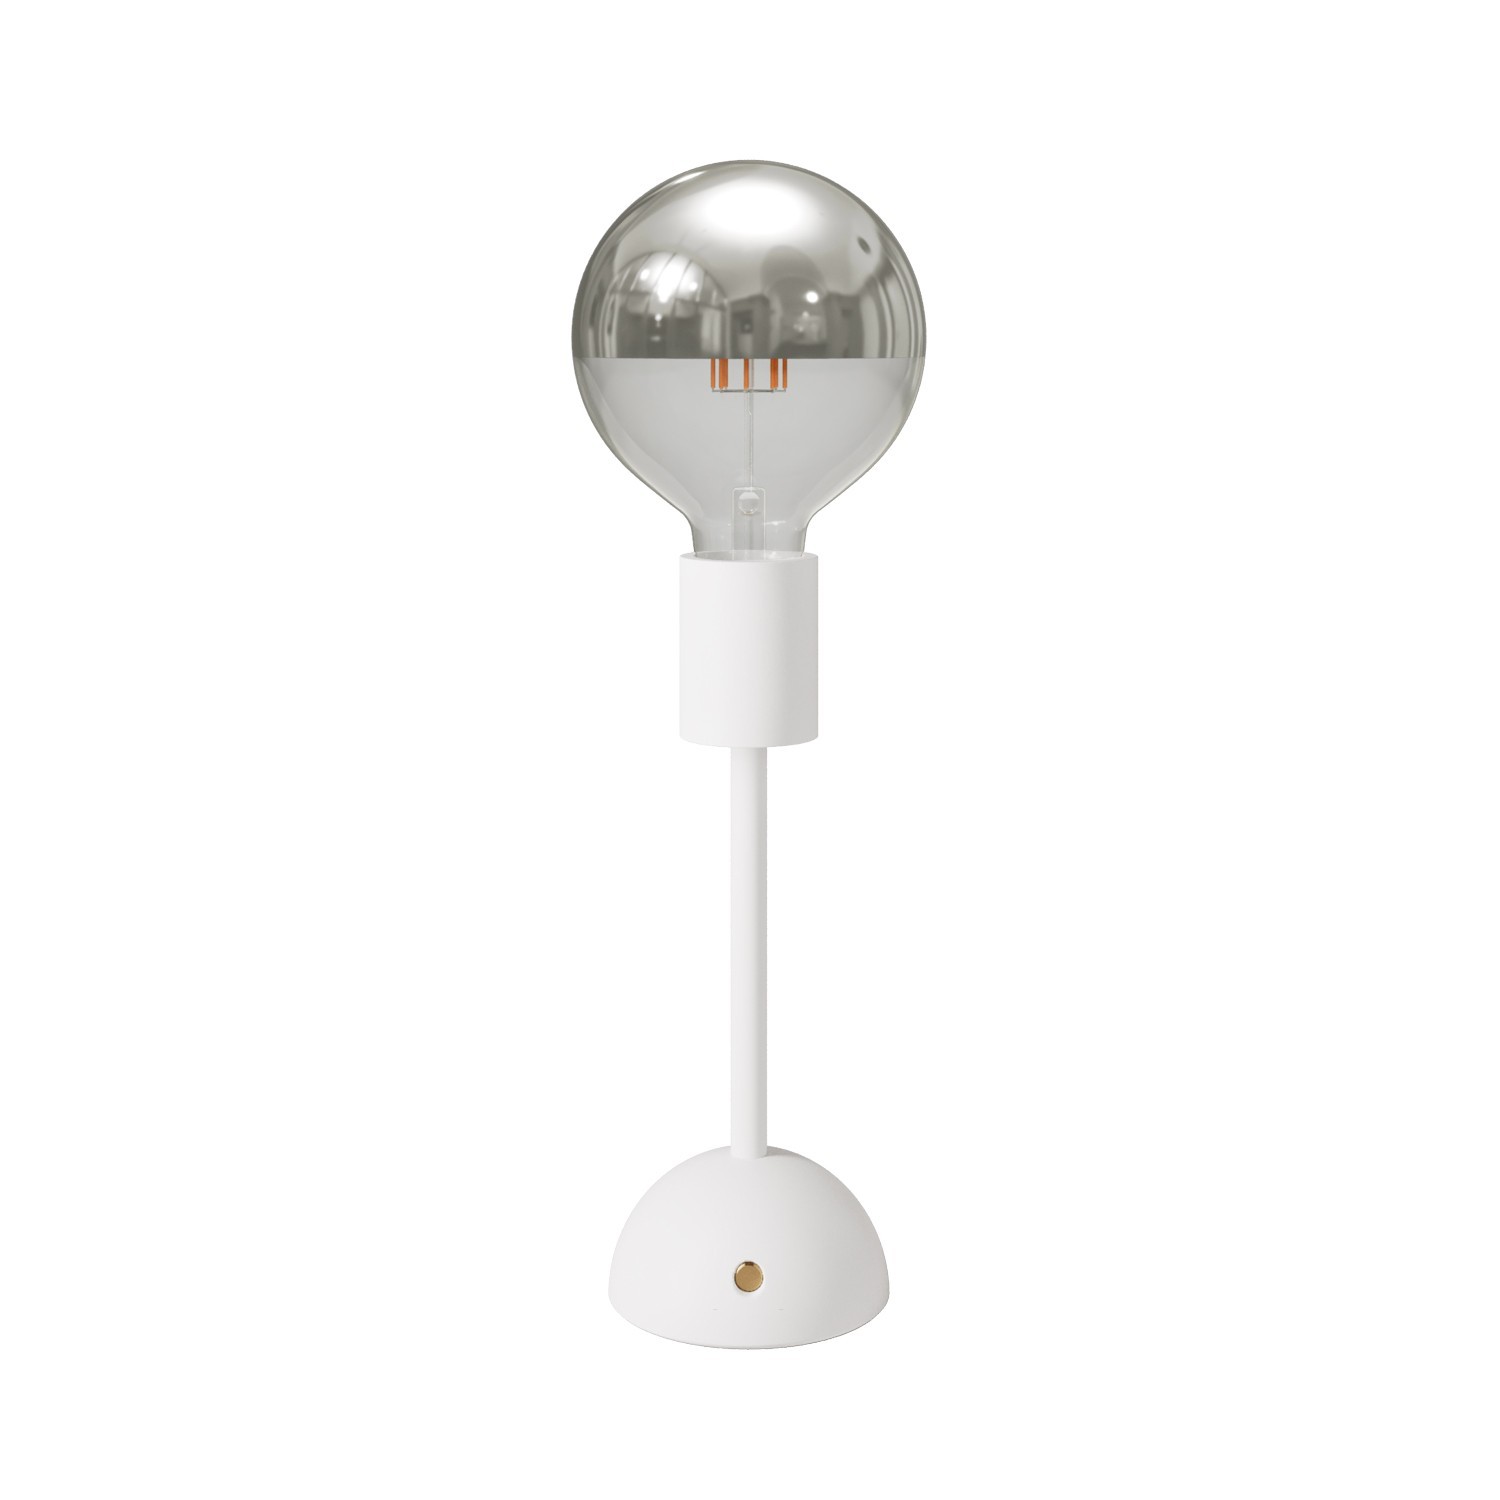 Tragbare, wiederaufladbare Leuchte Cabless02 mit Globe Glühbirne mit silberfarbener Kopfspiegelung